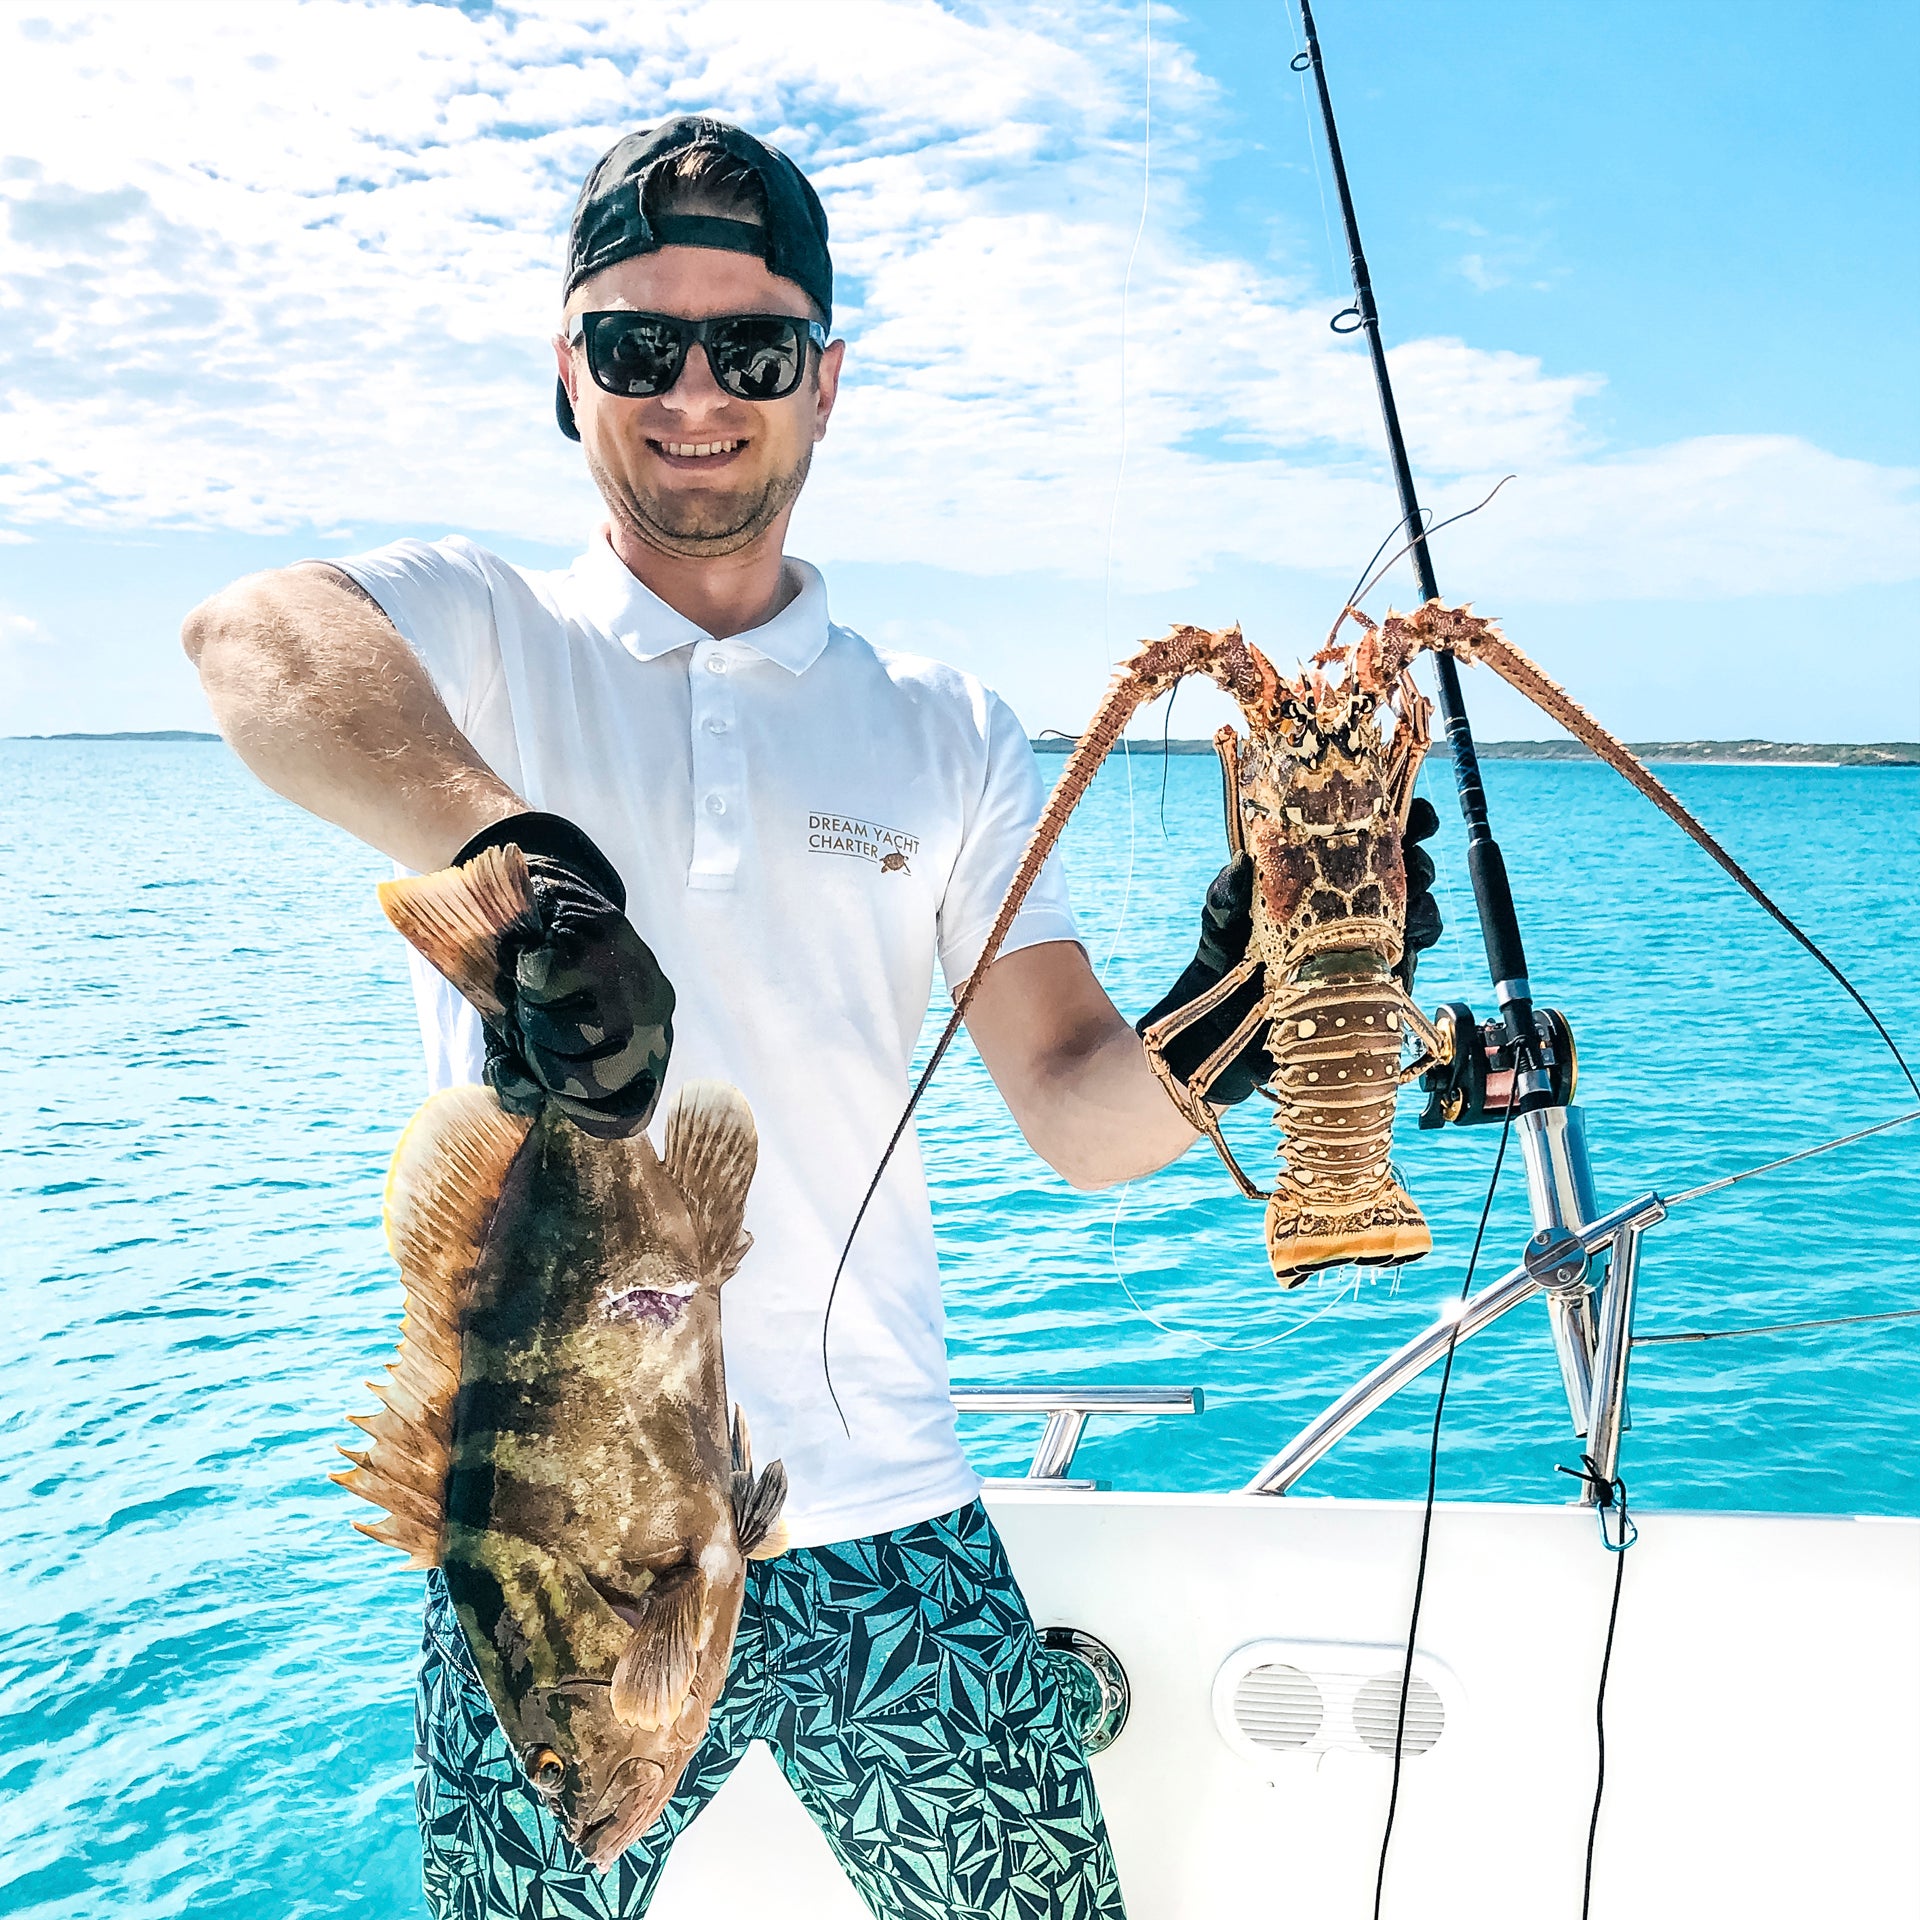 Gast op een zeiljacht vissend op vis en kreeft in de Bahamas